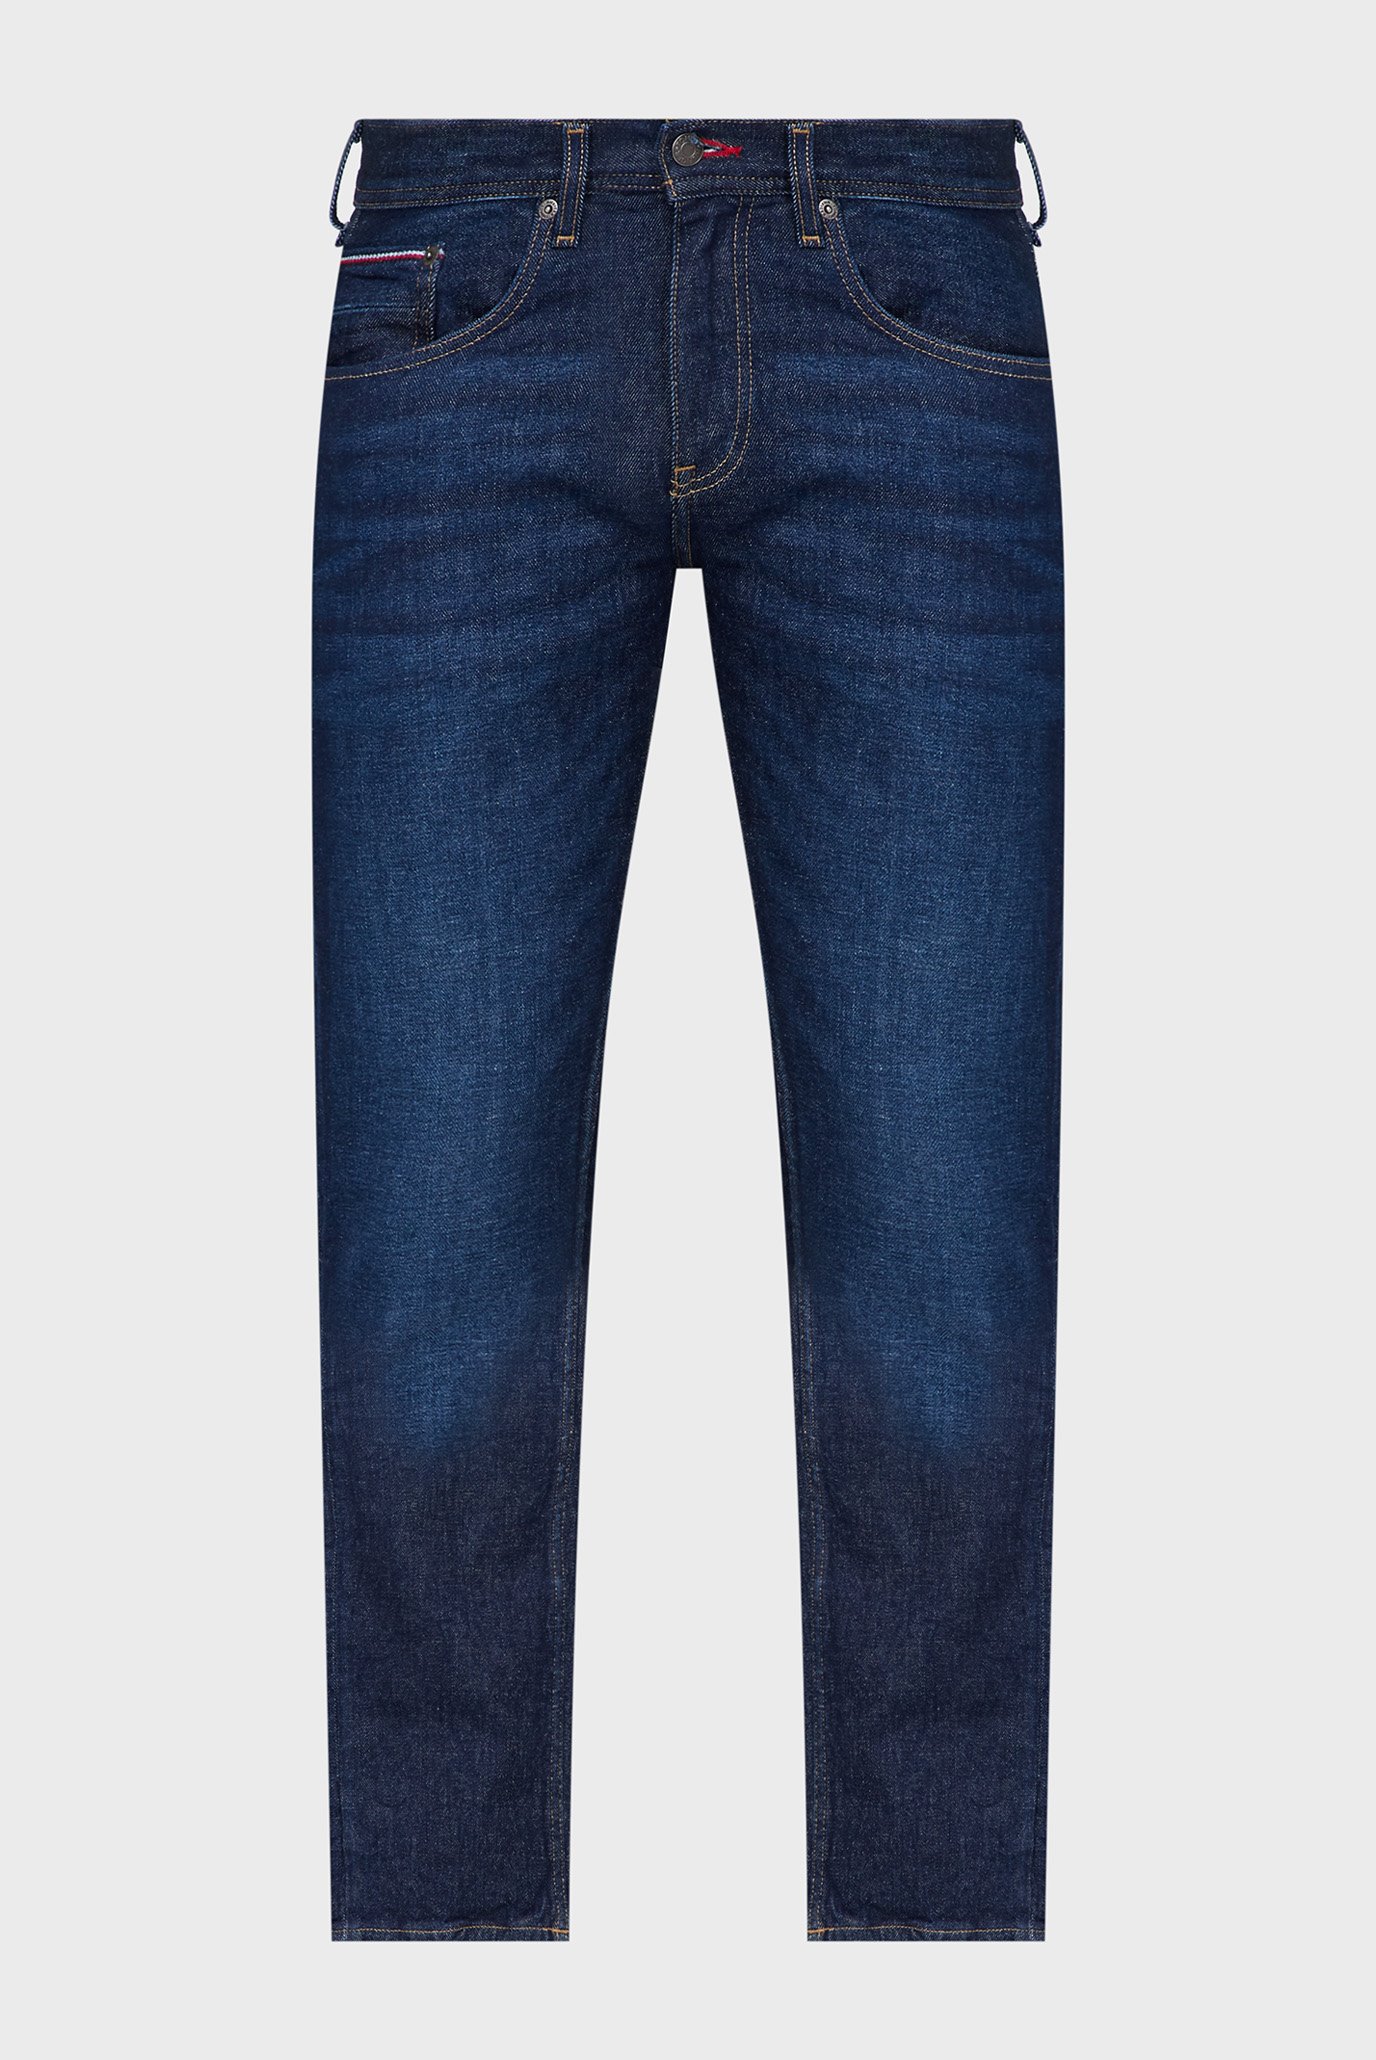 Мужские темно-синие джинсы STRAIGHT DENTON STR CARO INDIGO 1